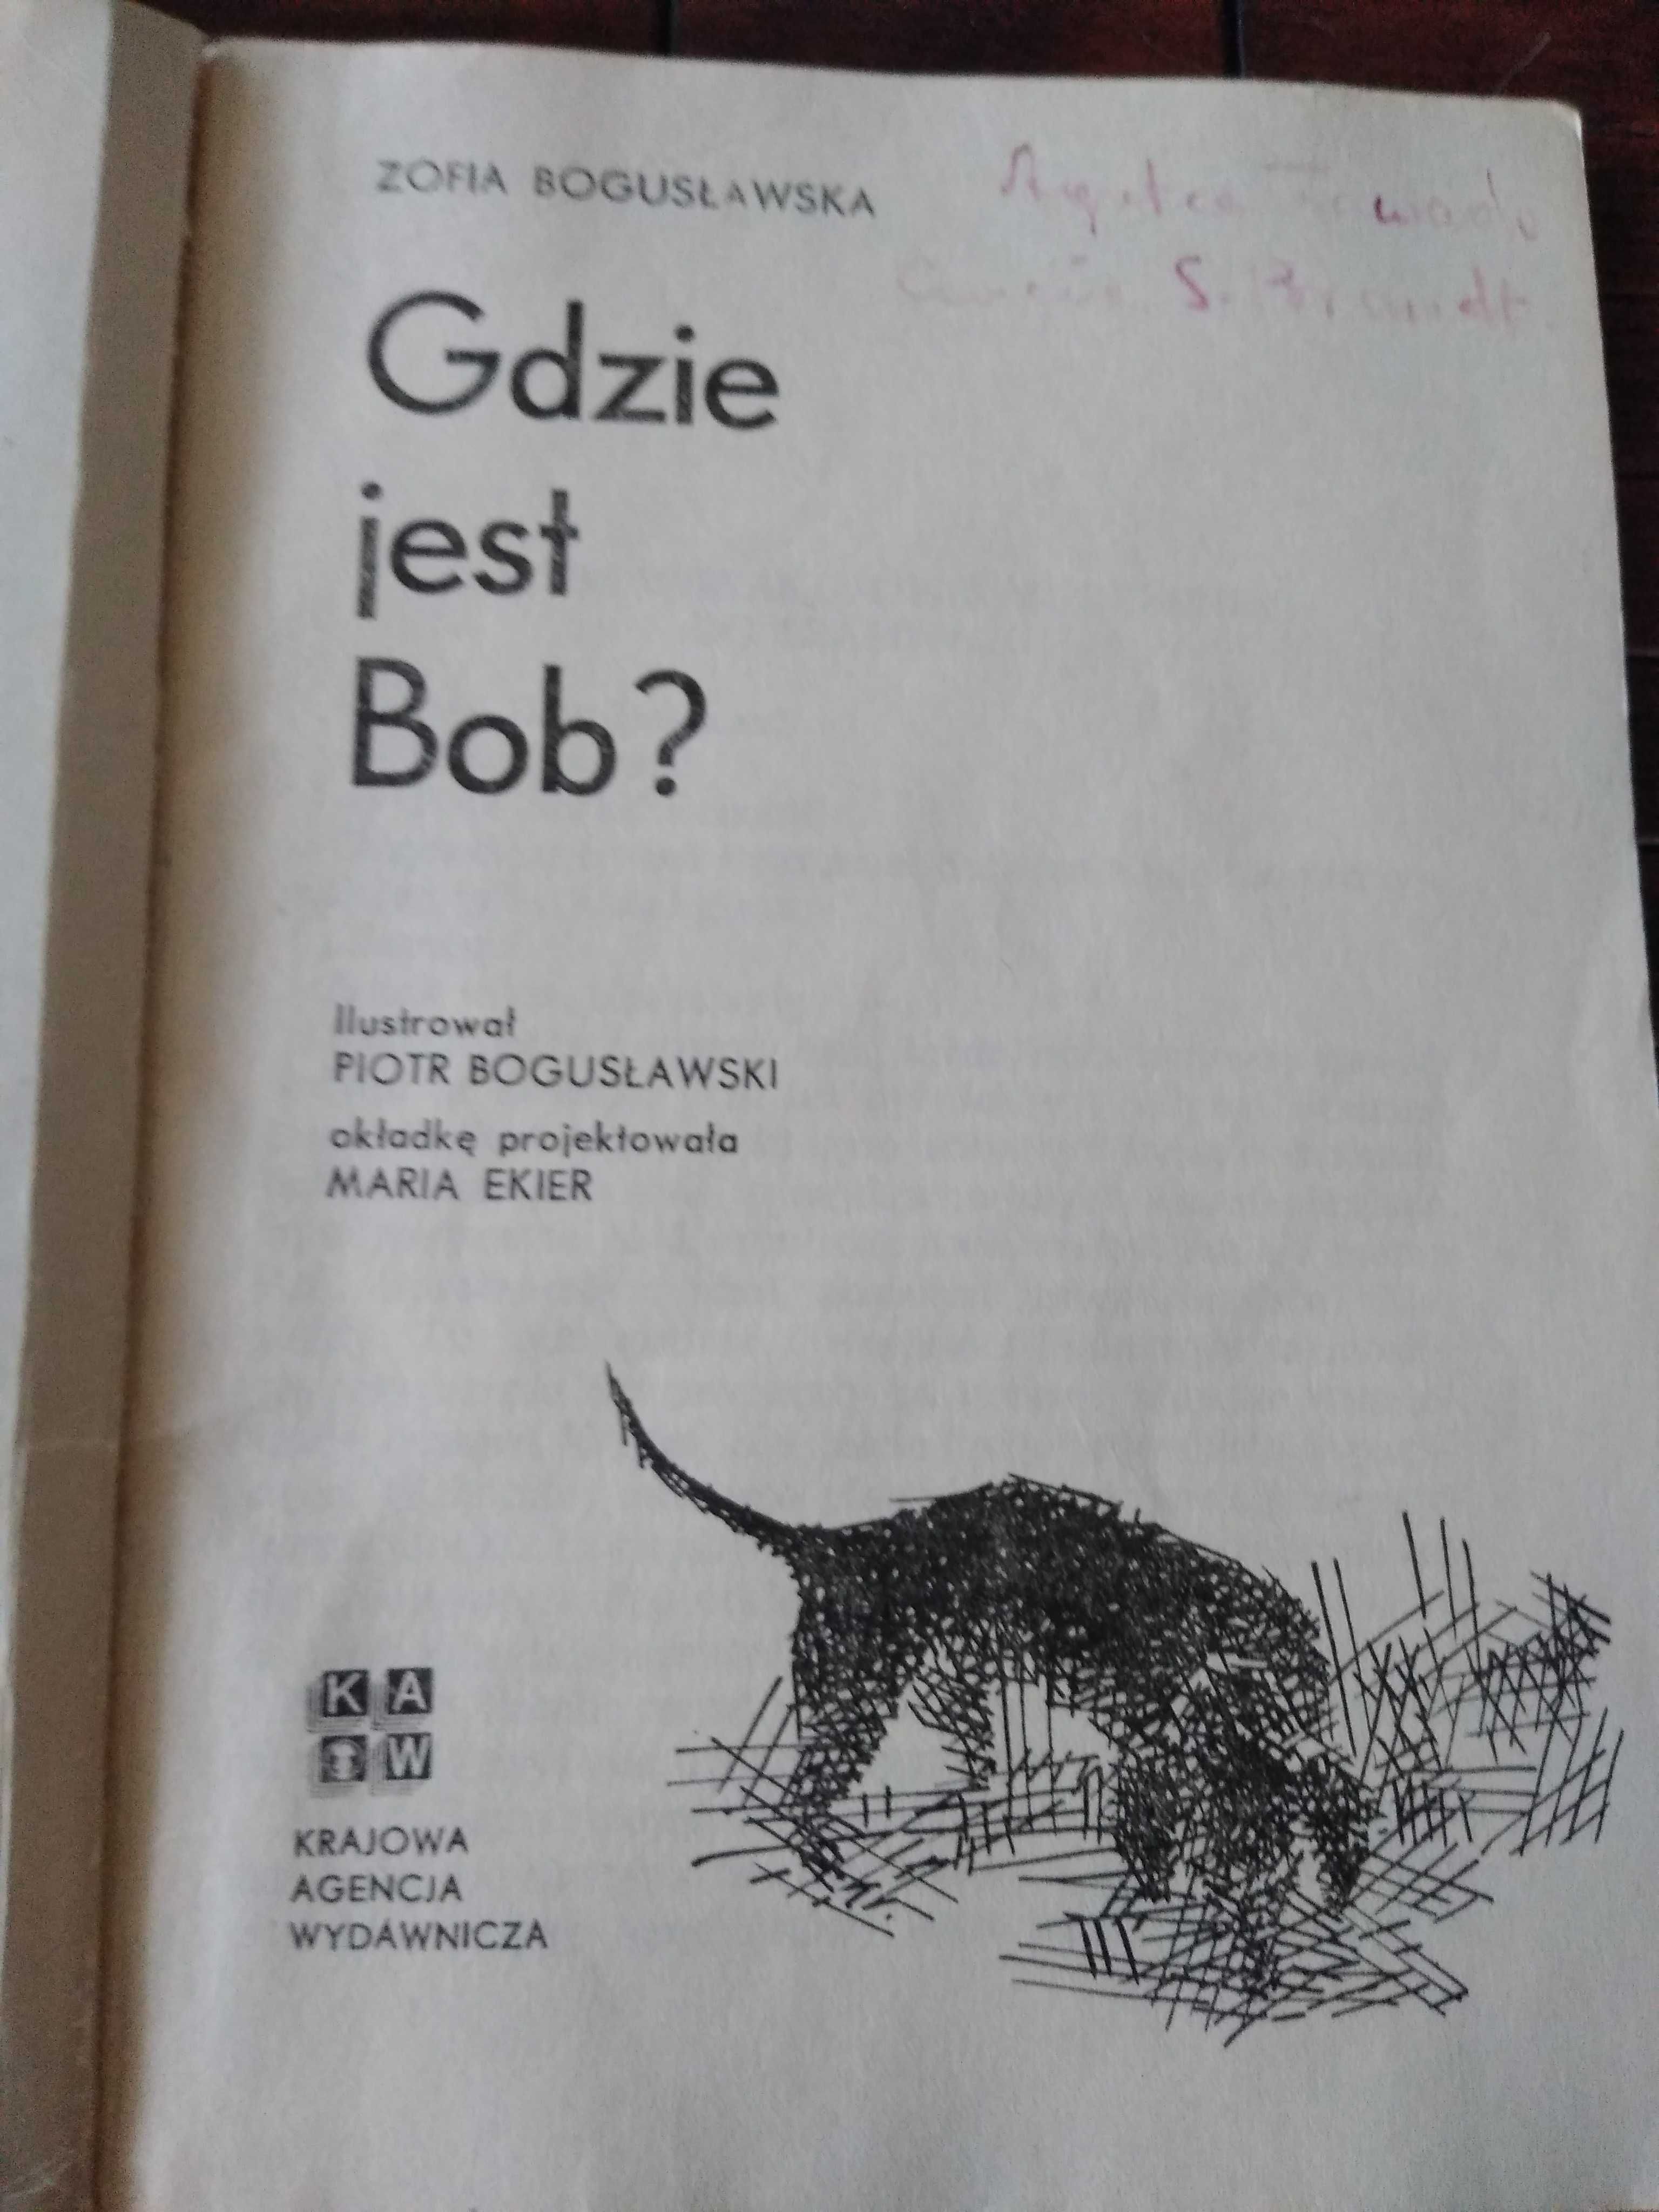 Boguslawska gdzie jest Bob